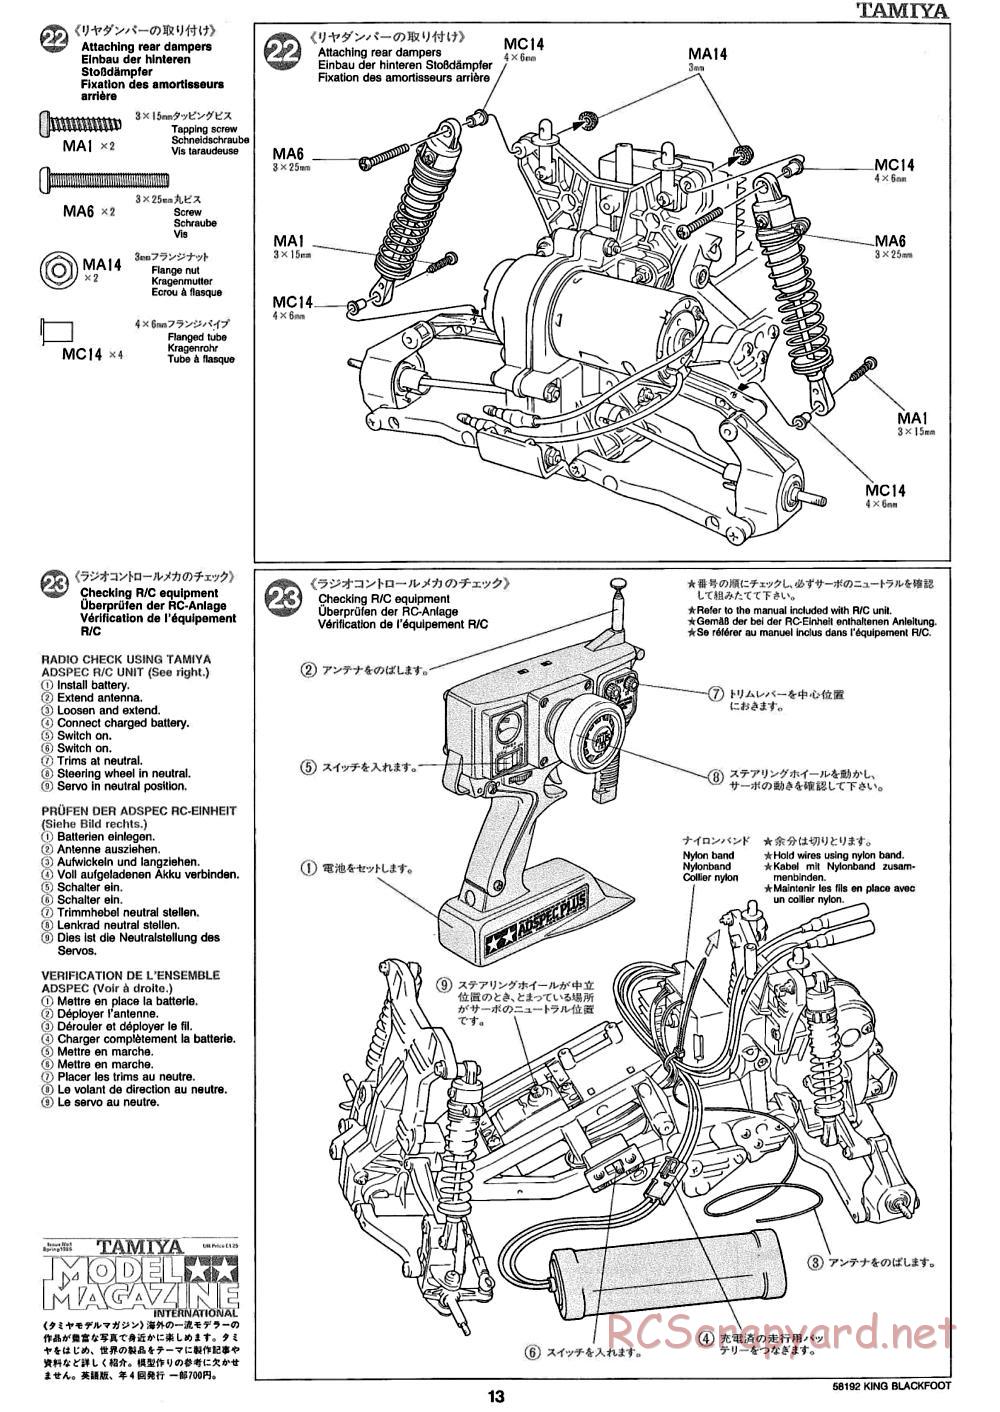 Tamiya - King Blackfoot Chassis - Manual - Page 13